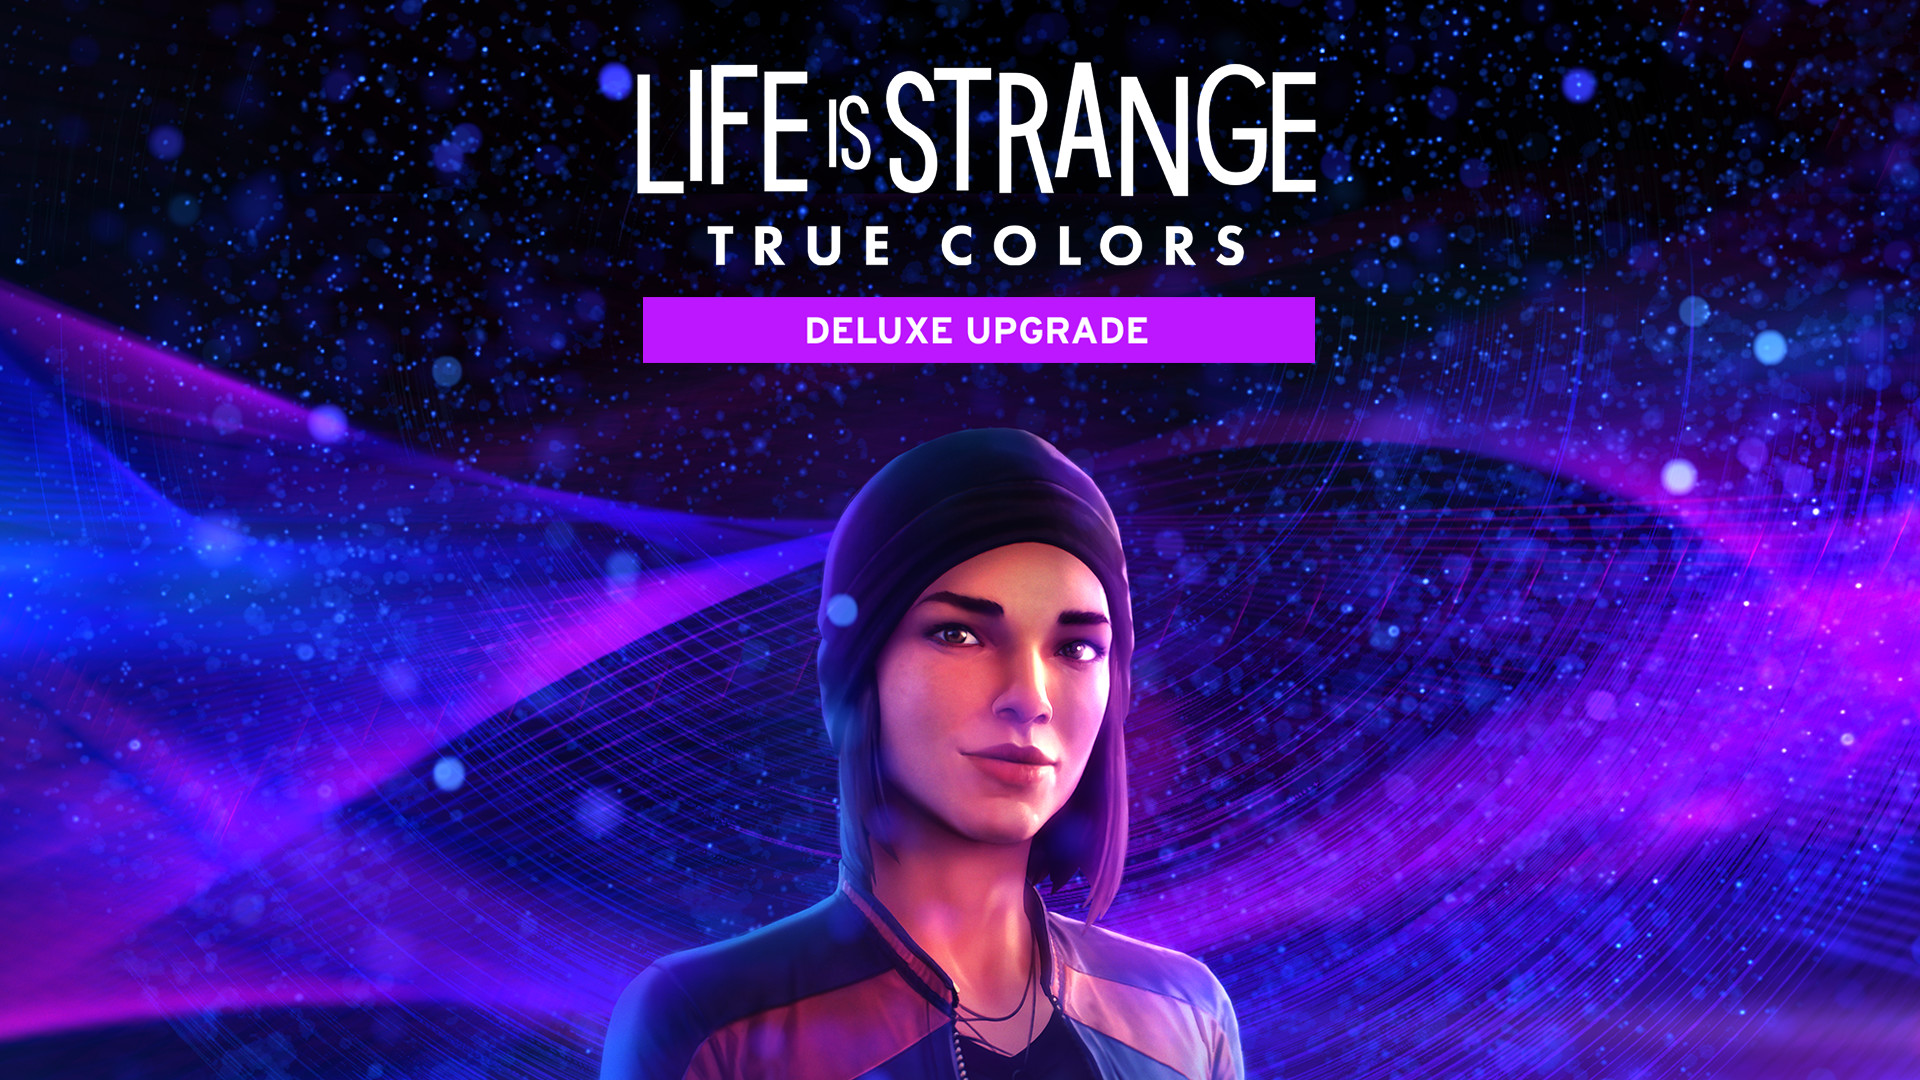 Life is Strange: True Colors - Deluxe Upgrade Featured Screenshot #1